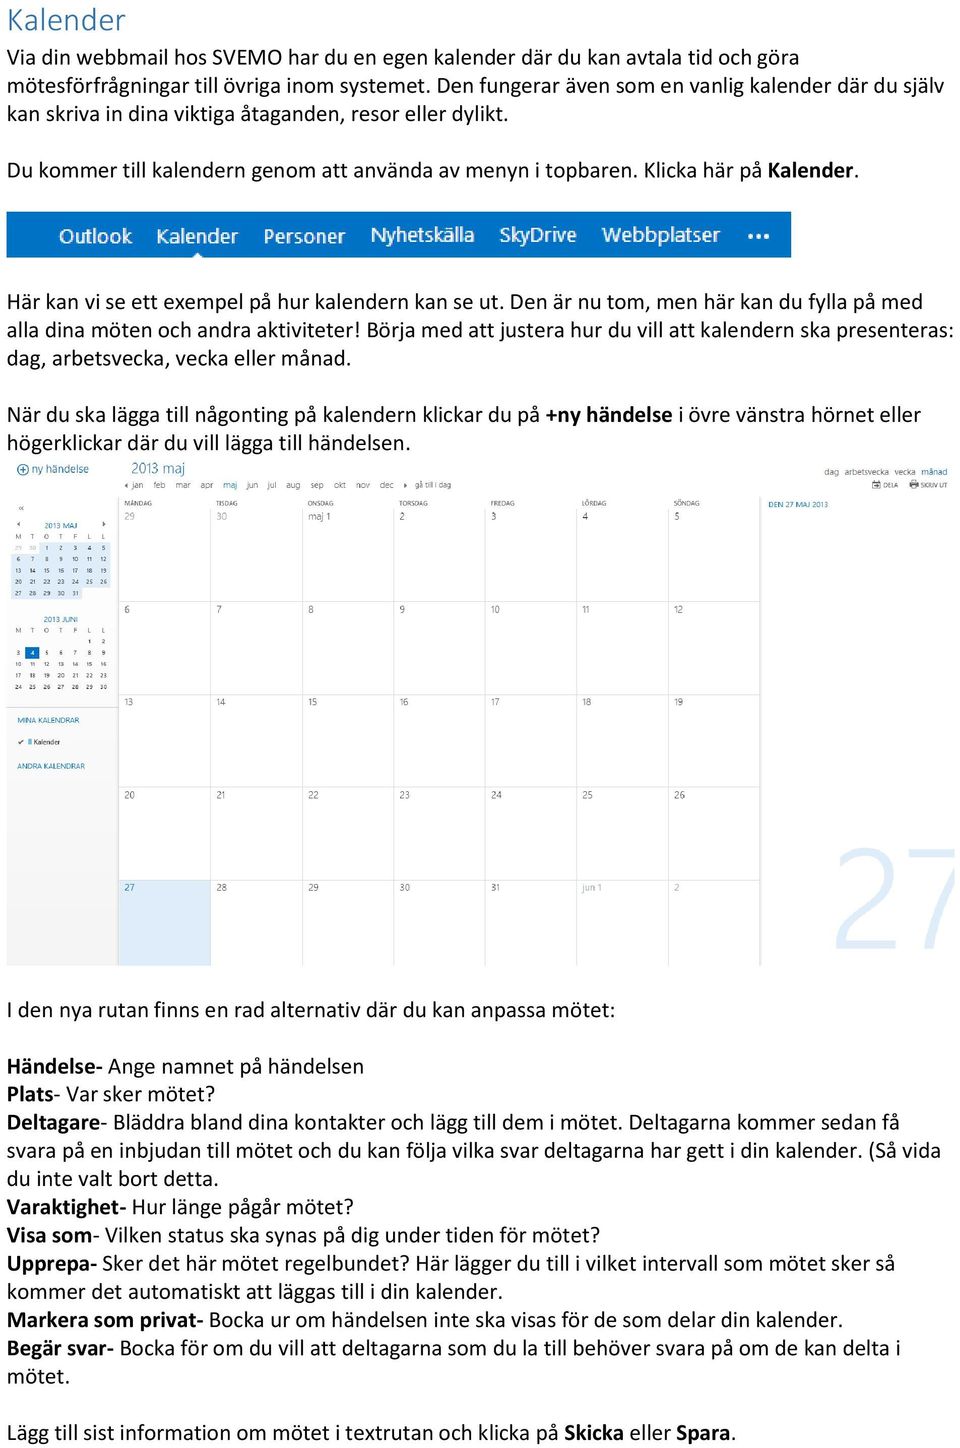 Här kan vi se ett exempel på hur kalendern kan se ut. Den är nu tom, men här kan du fylla på med alla dina möten och andra aktiviteter!